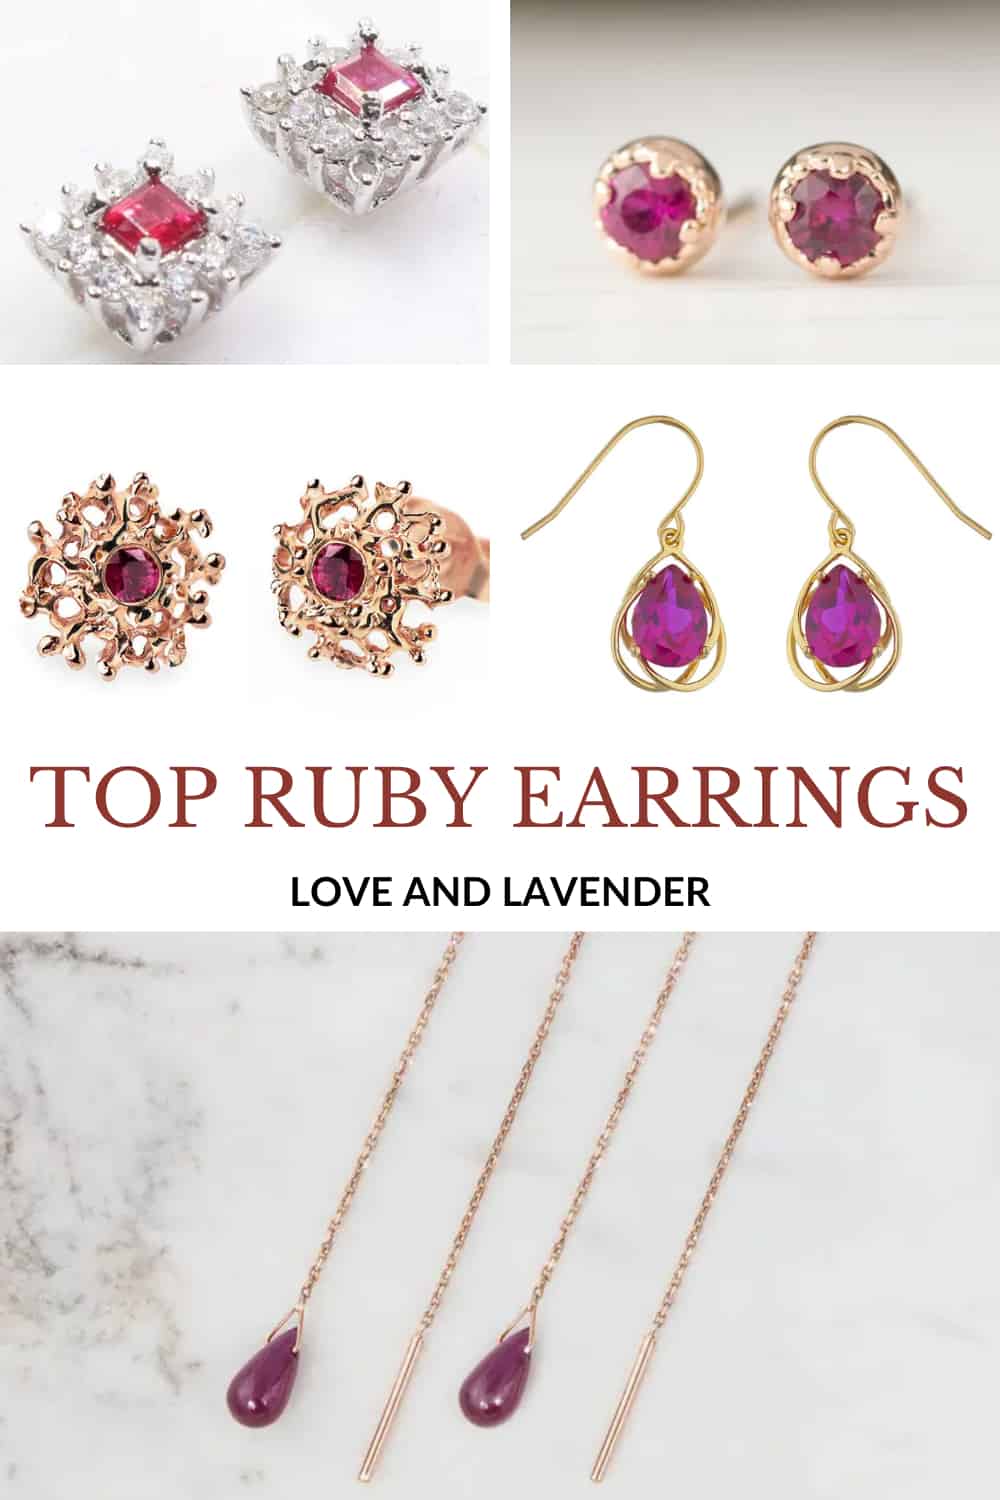 Pinterest pin -Top Ruby Earrings